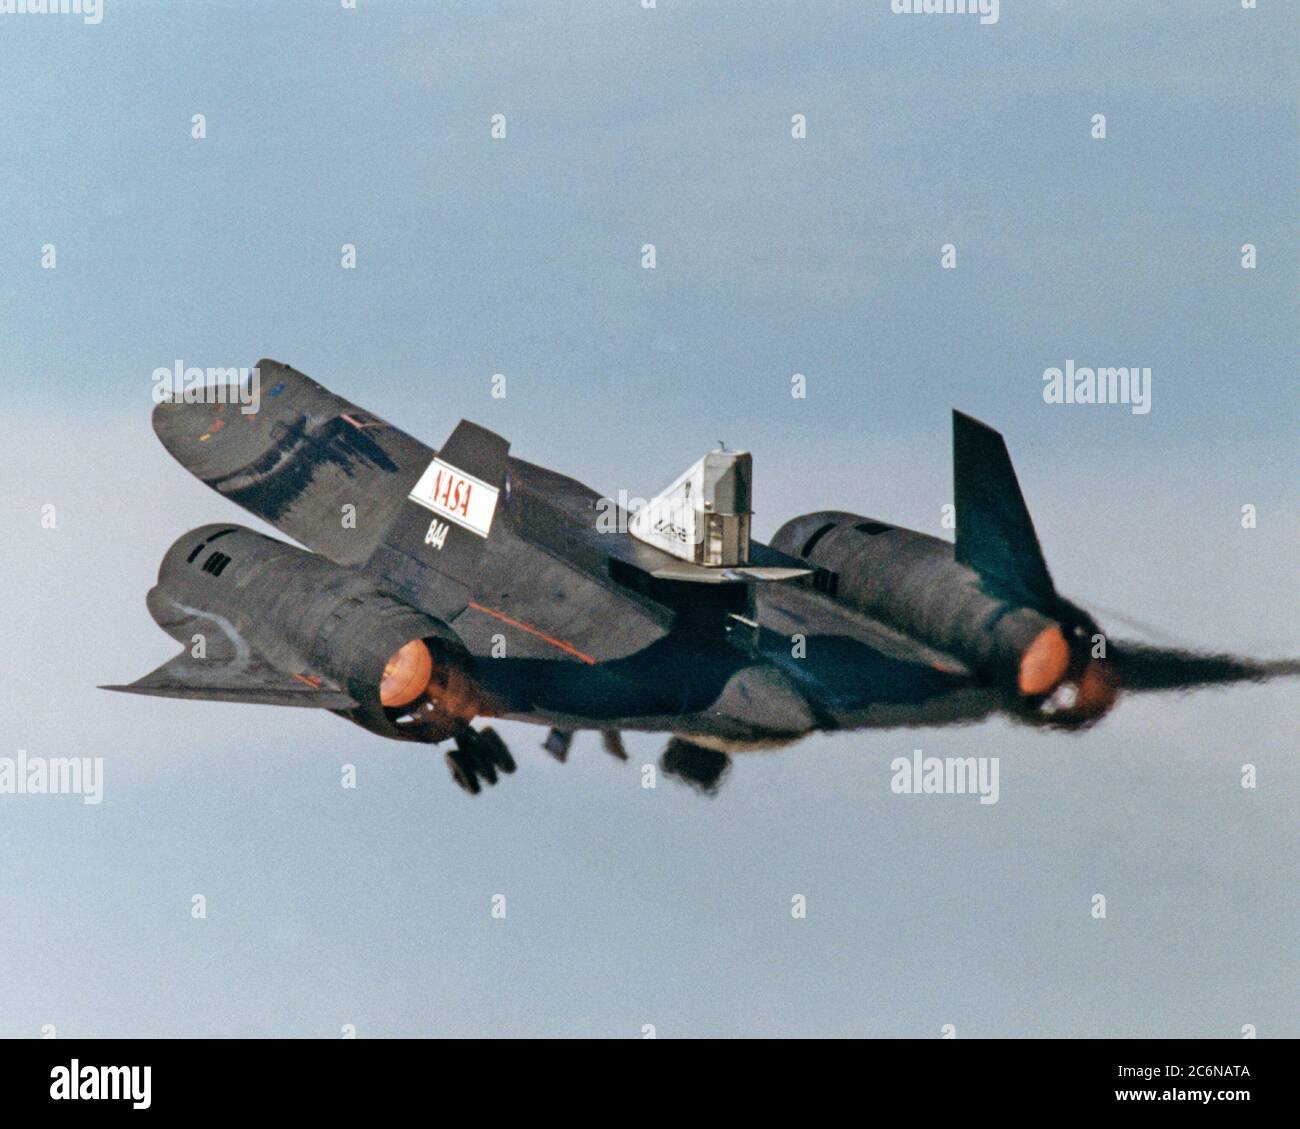 cette-photo-montre-la-cosse-lasre-sur-le-fuselage-arriere-superieur-d-un-sr-71-lors-du-decollage-du-premier-vol-pour-faire-l-objet-d-un-essai-de-debit-a-froid-en-vol-le-vol-a-eu-lieu-le-4-mars-1998-2c6nata.jpg